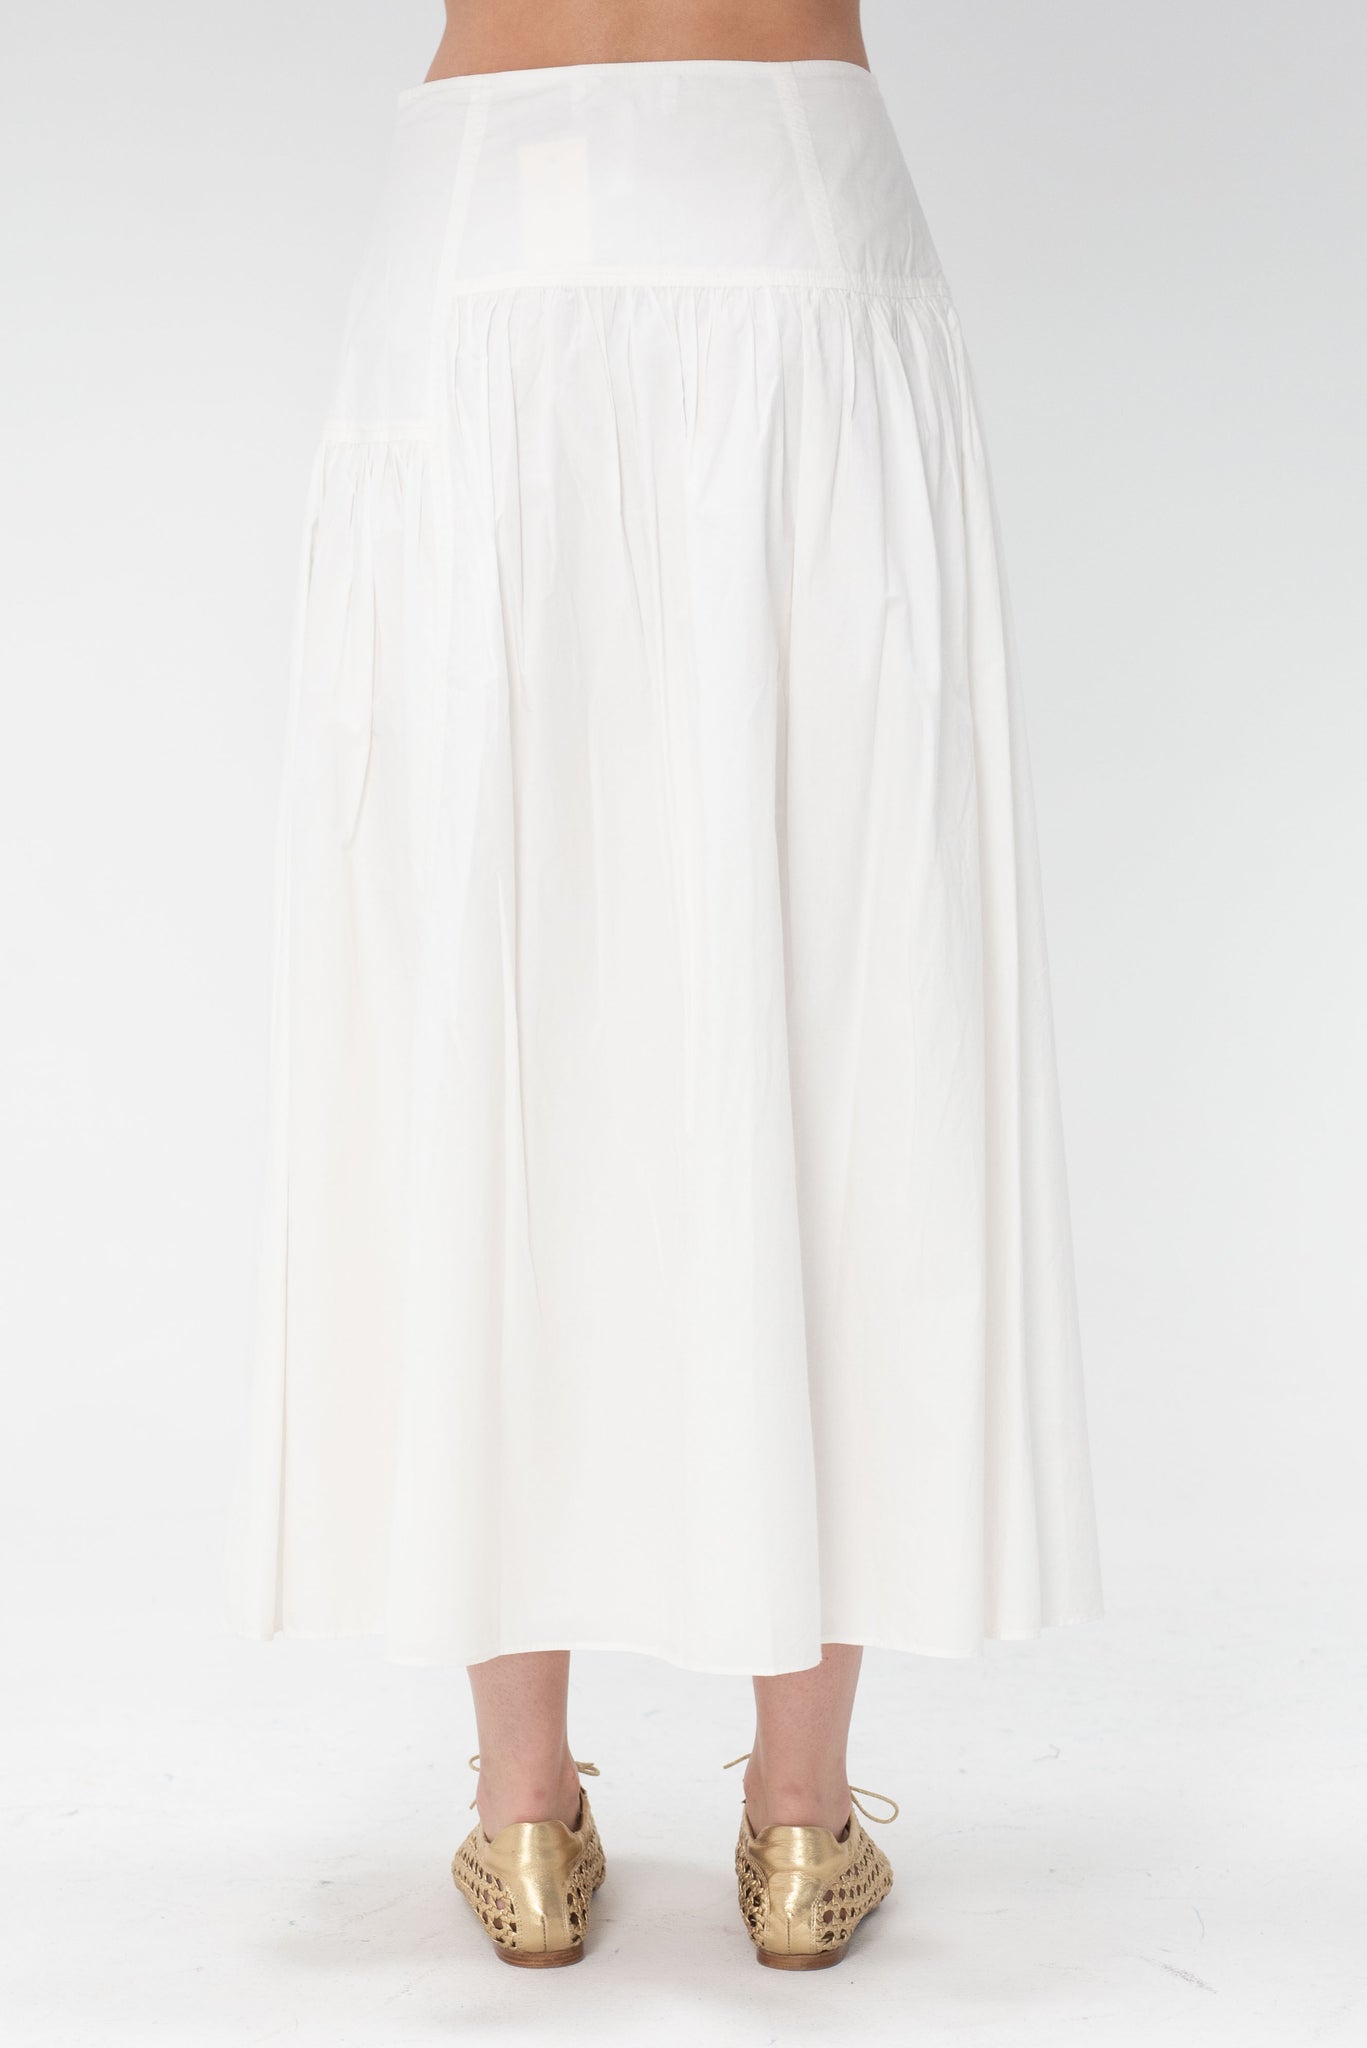 Apiece Apart - Nora Assymetrical Maxi Skirt, Cream